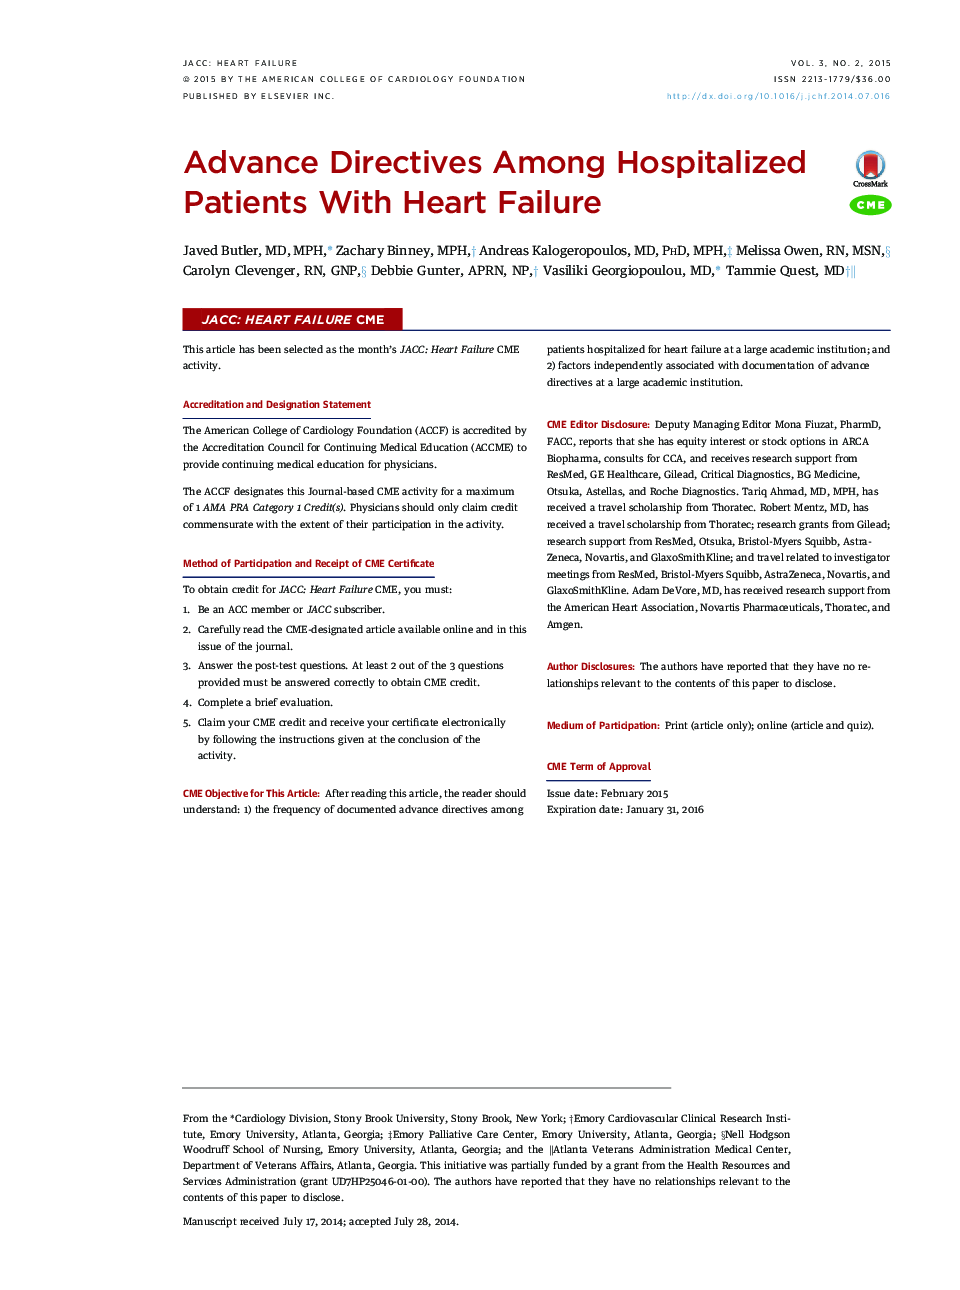 دستورالعملهای پیشرفته در بیماران بستری شده با نارسایی قلب 